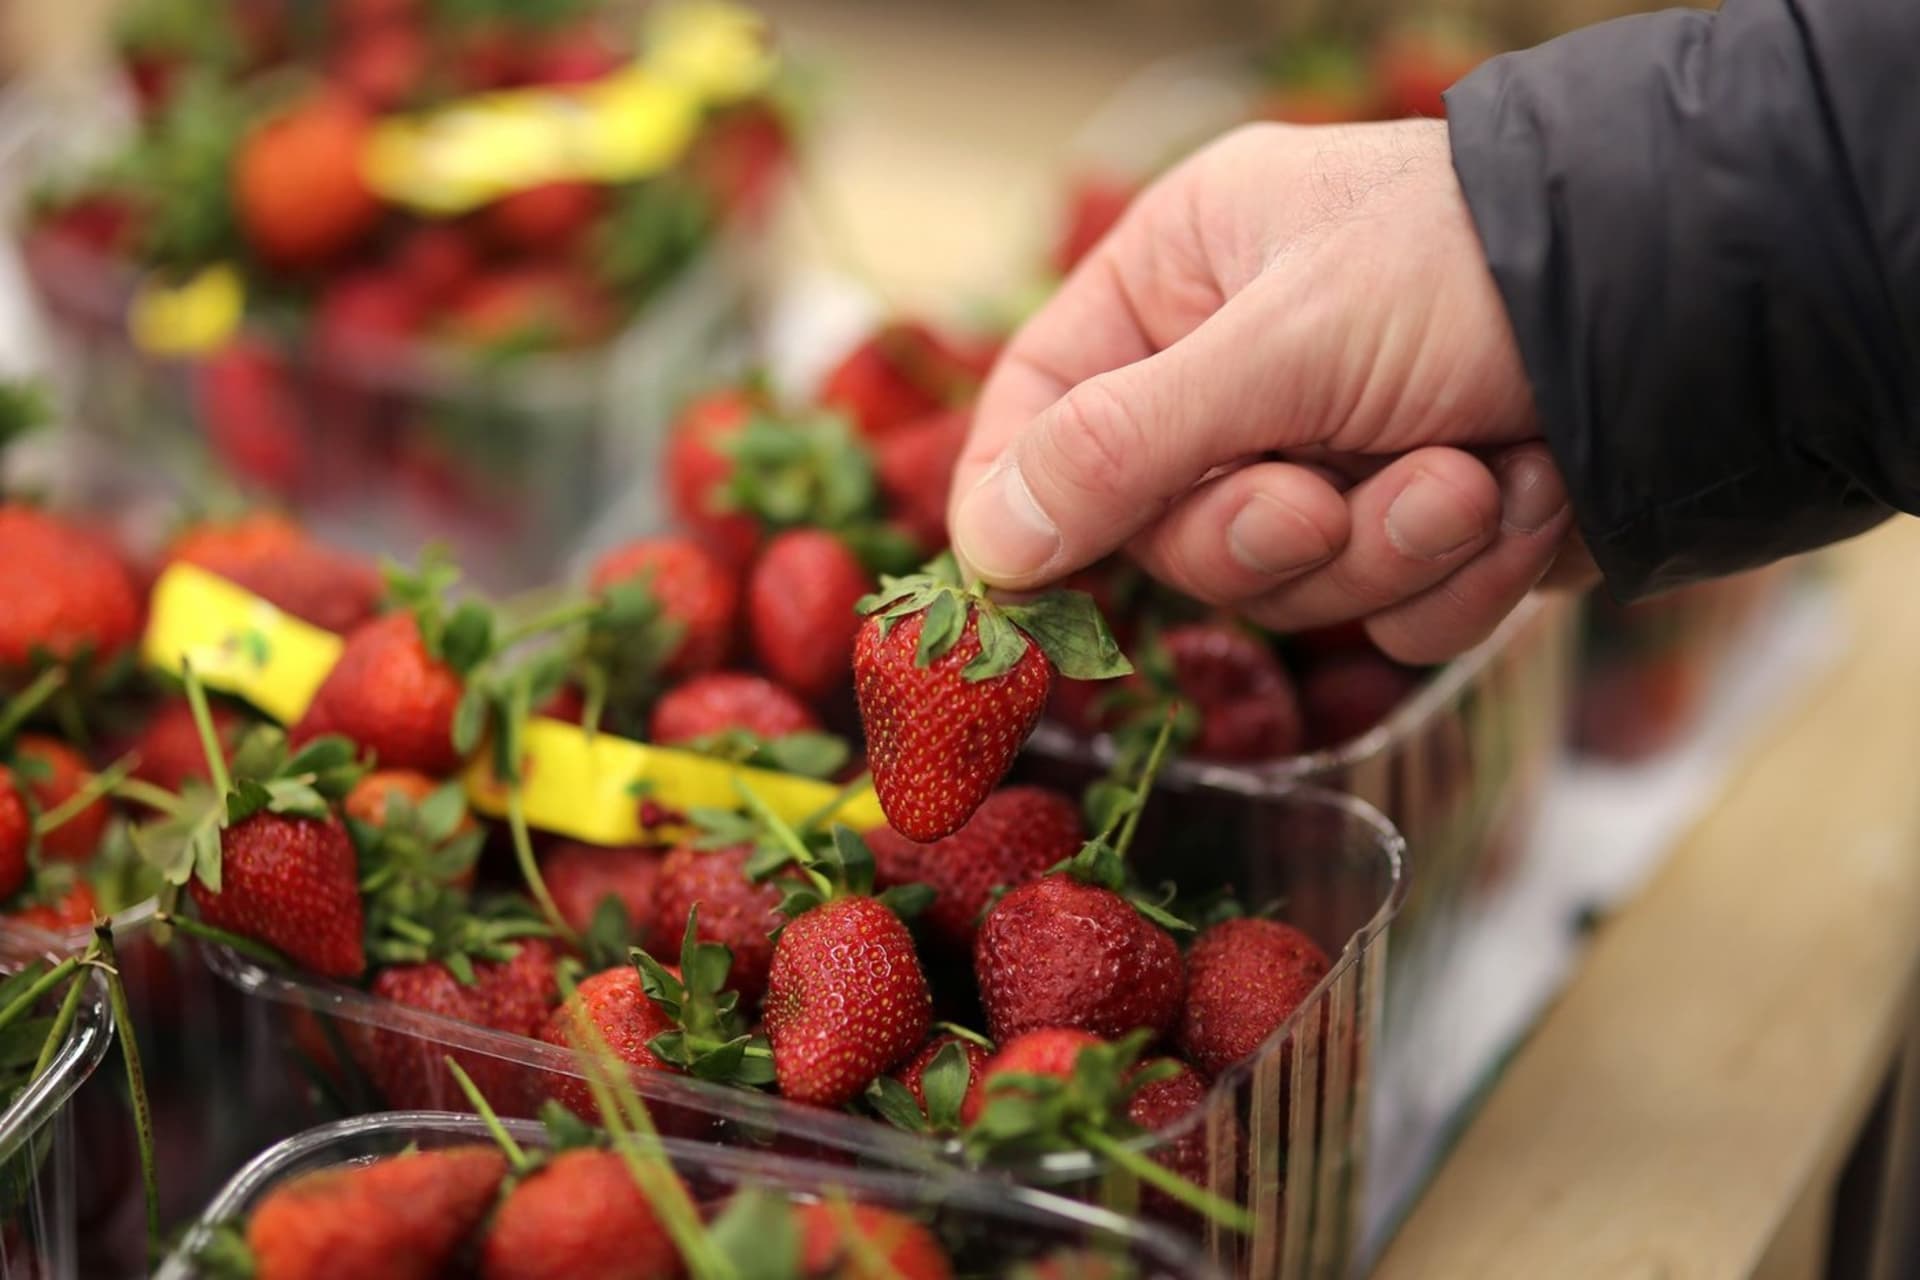 V polských supermarketech byly nalezeny kontaminované jahody. (Ilustrační foto)